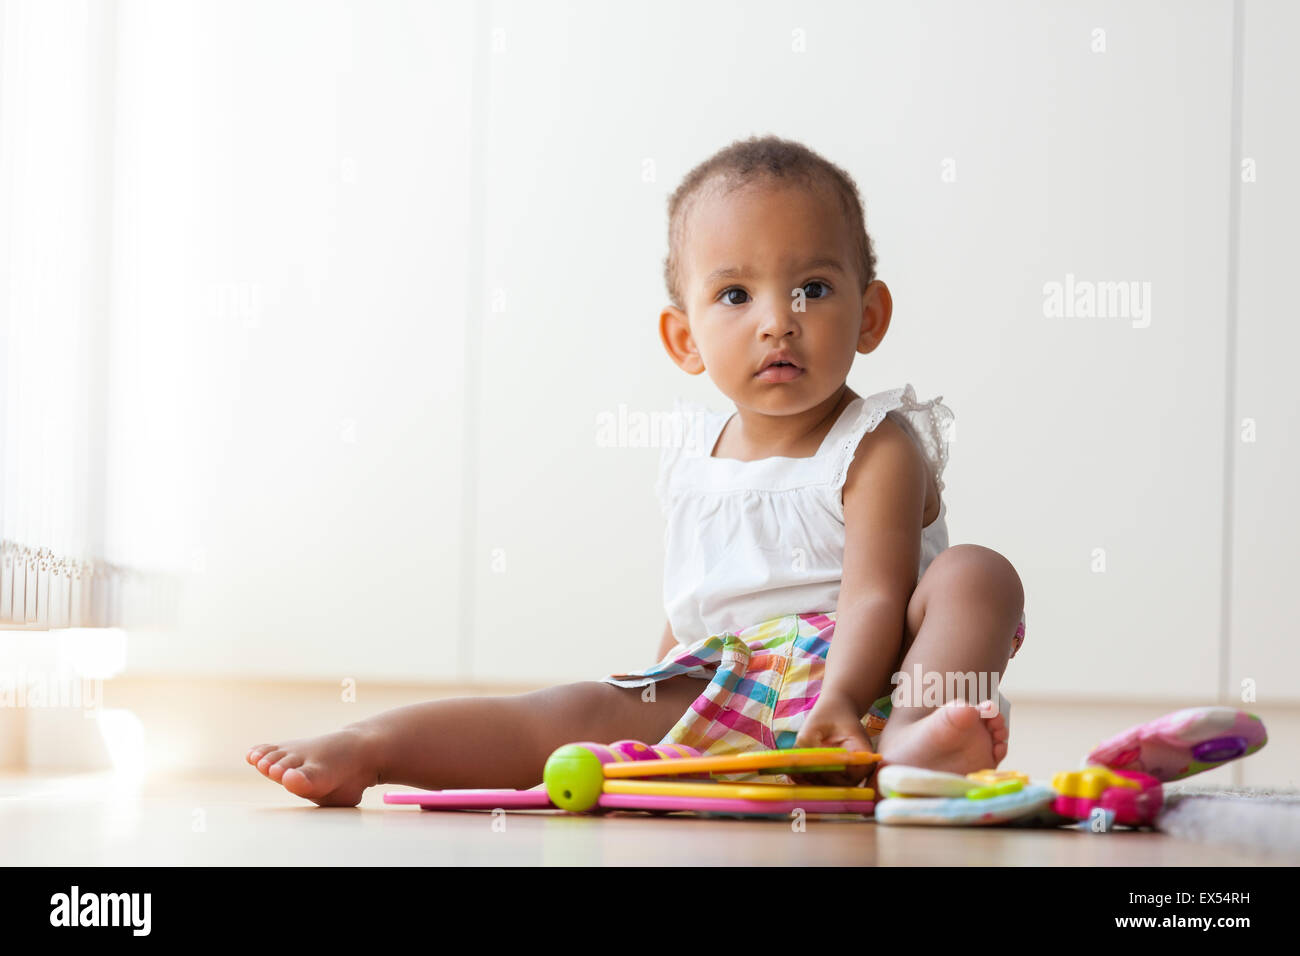 Porträt des afroamerikanischen kleine Mädchen auf dem Boden sitzen und spielen - Menschen mit schwarzer Hautfarbe Stockfoto